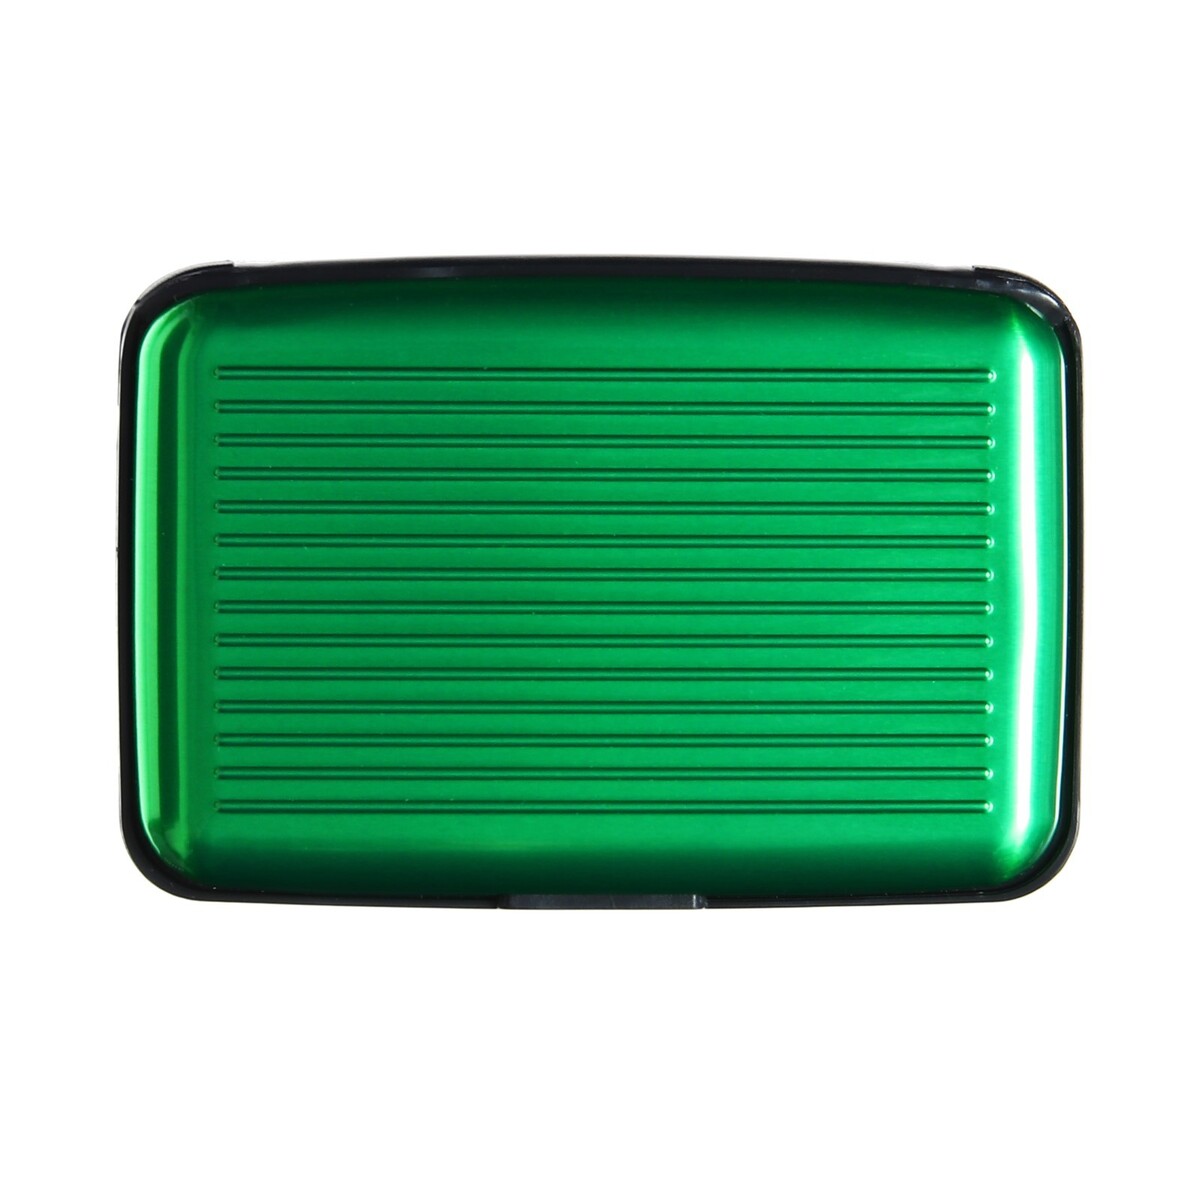 Визитница пластиковая, металлическая, с отделениями внутри, зеленая катушка оснащенная fx200 1 подшипник 5 1 1 пластиковая шпуля зеленая